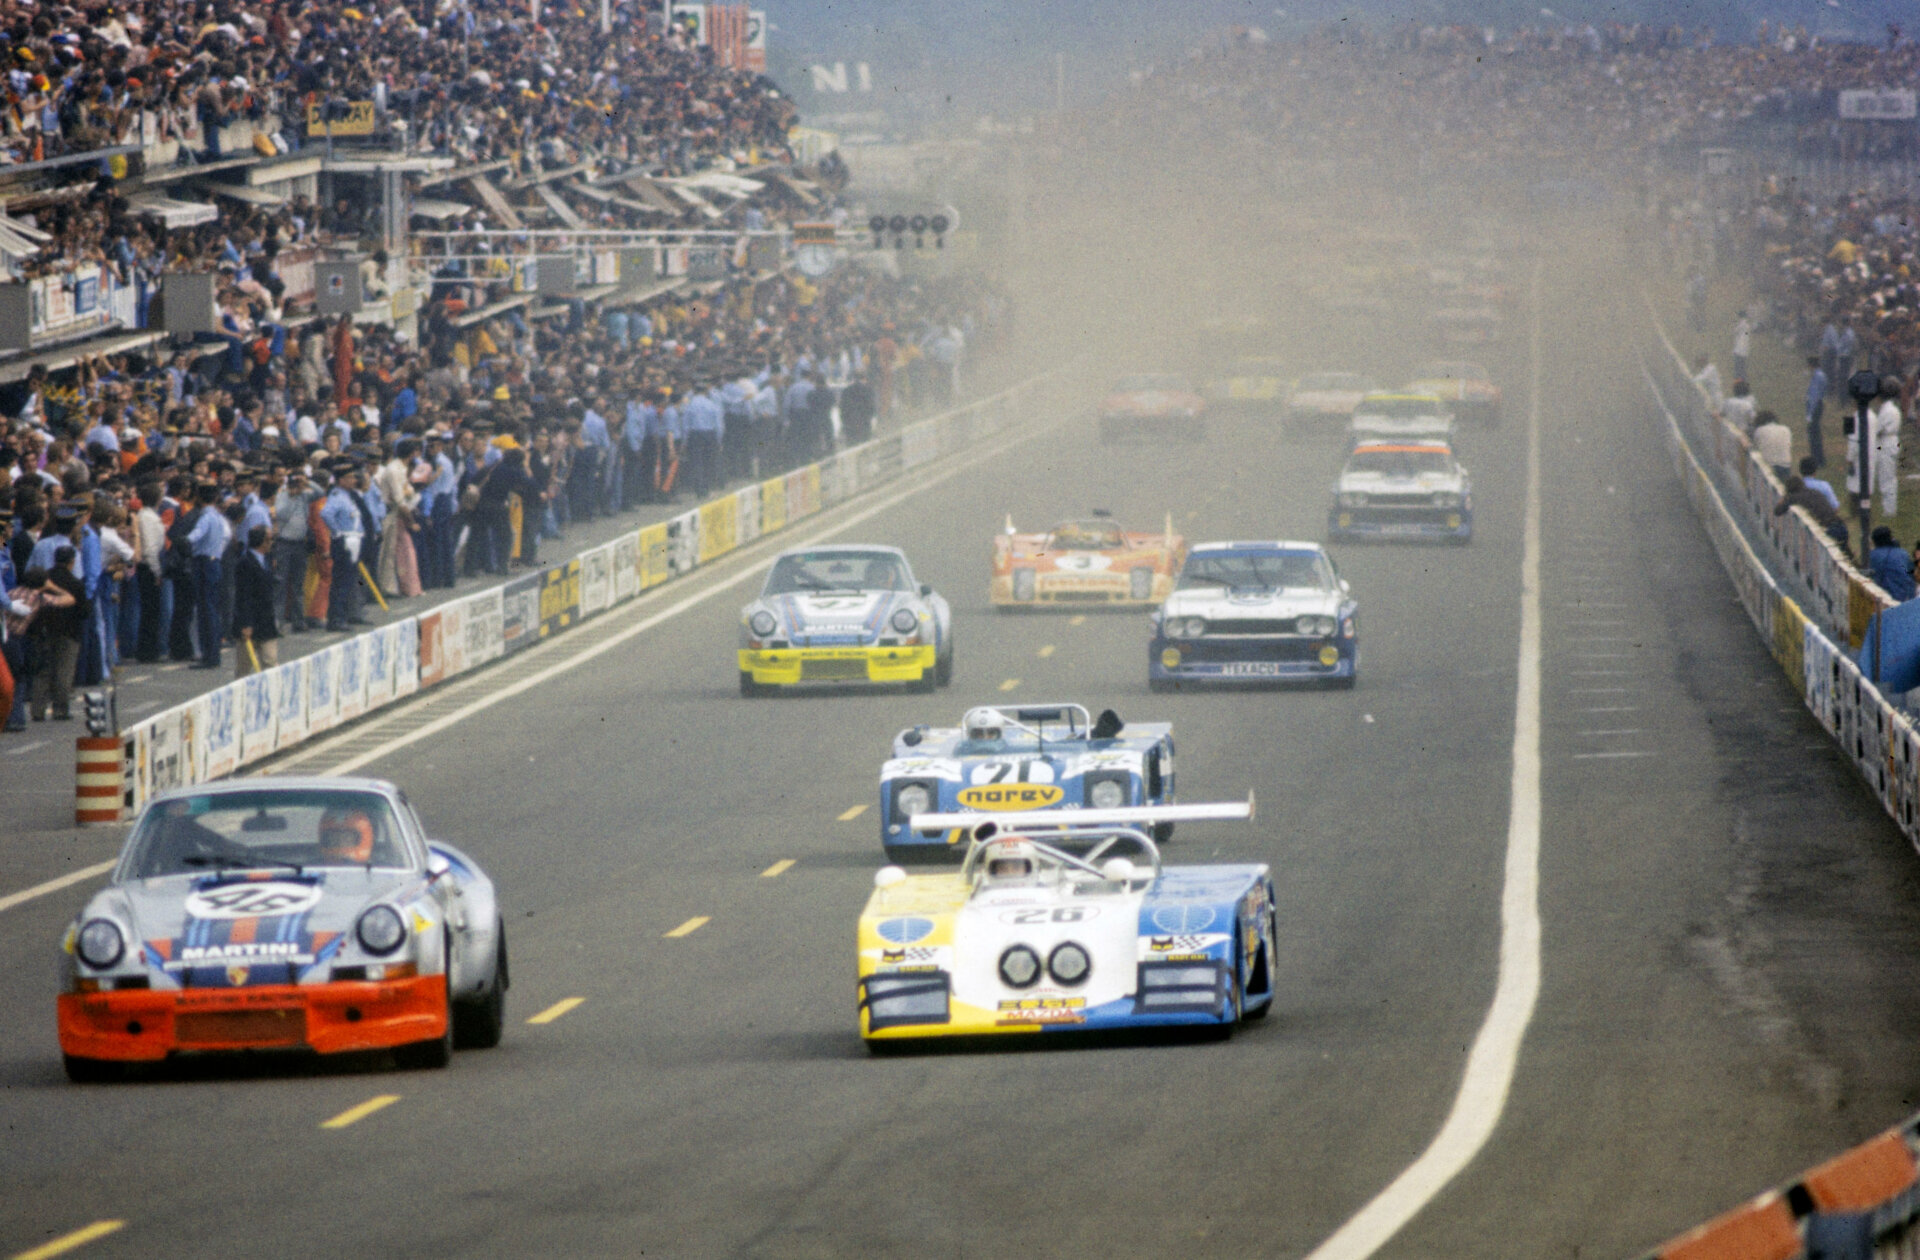 xe dua huyen thoai Porsche Carrera RSR Martini Racing 197329